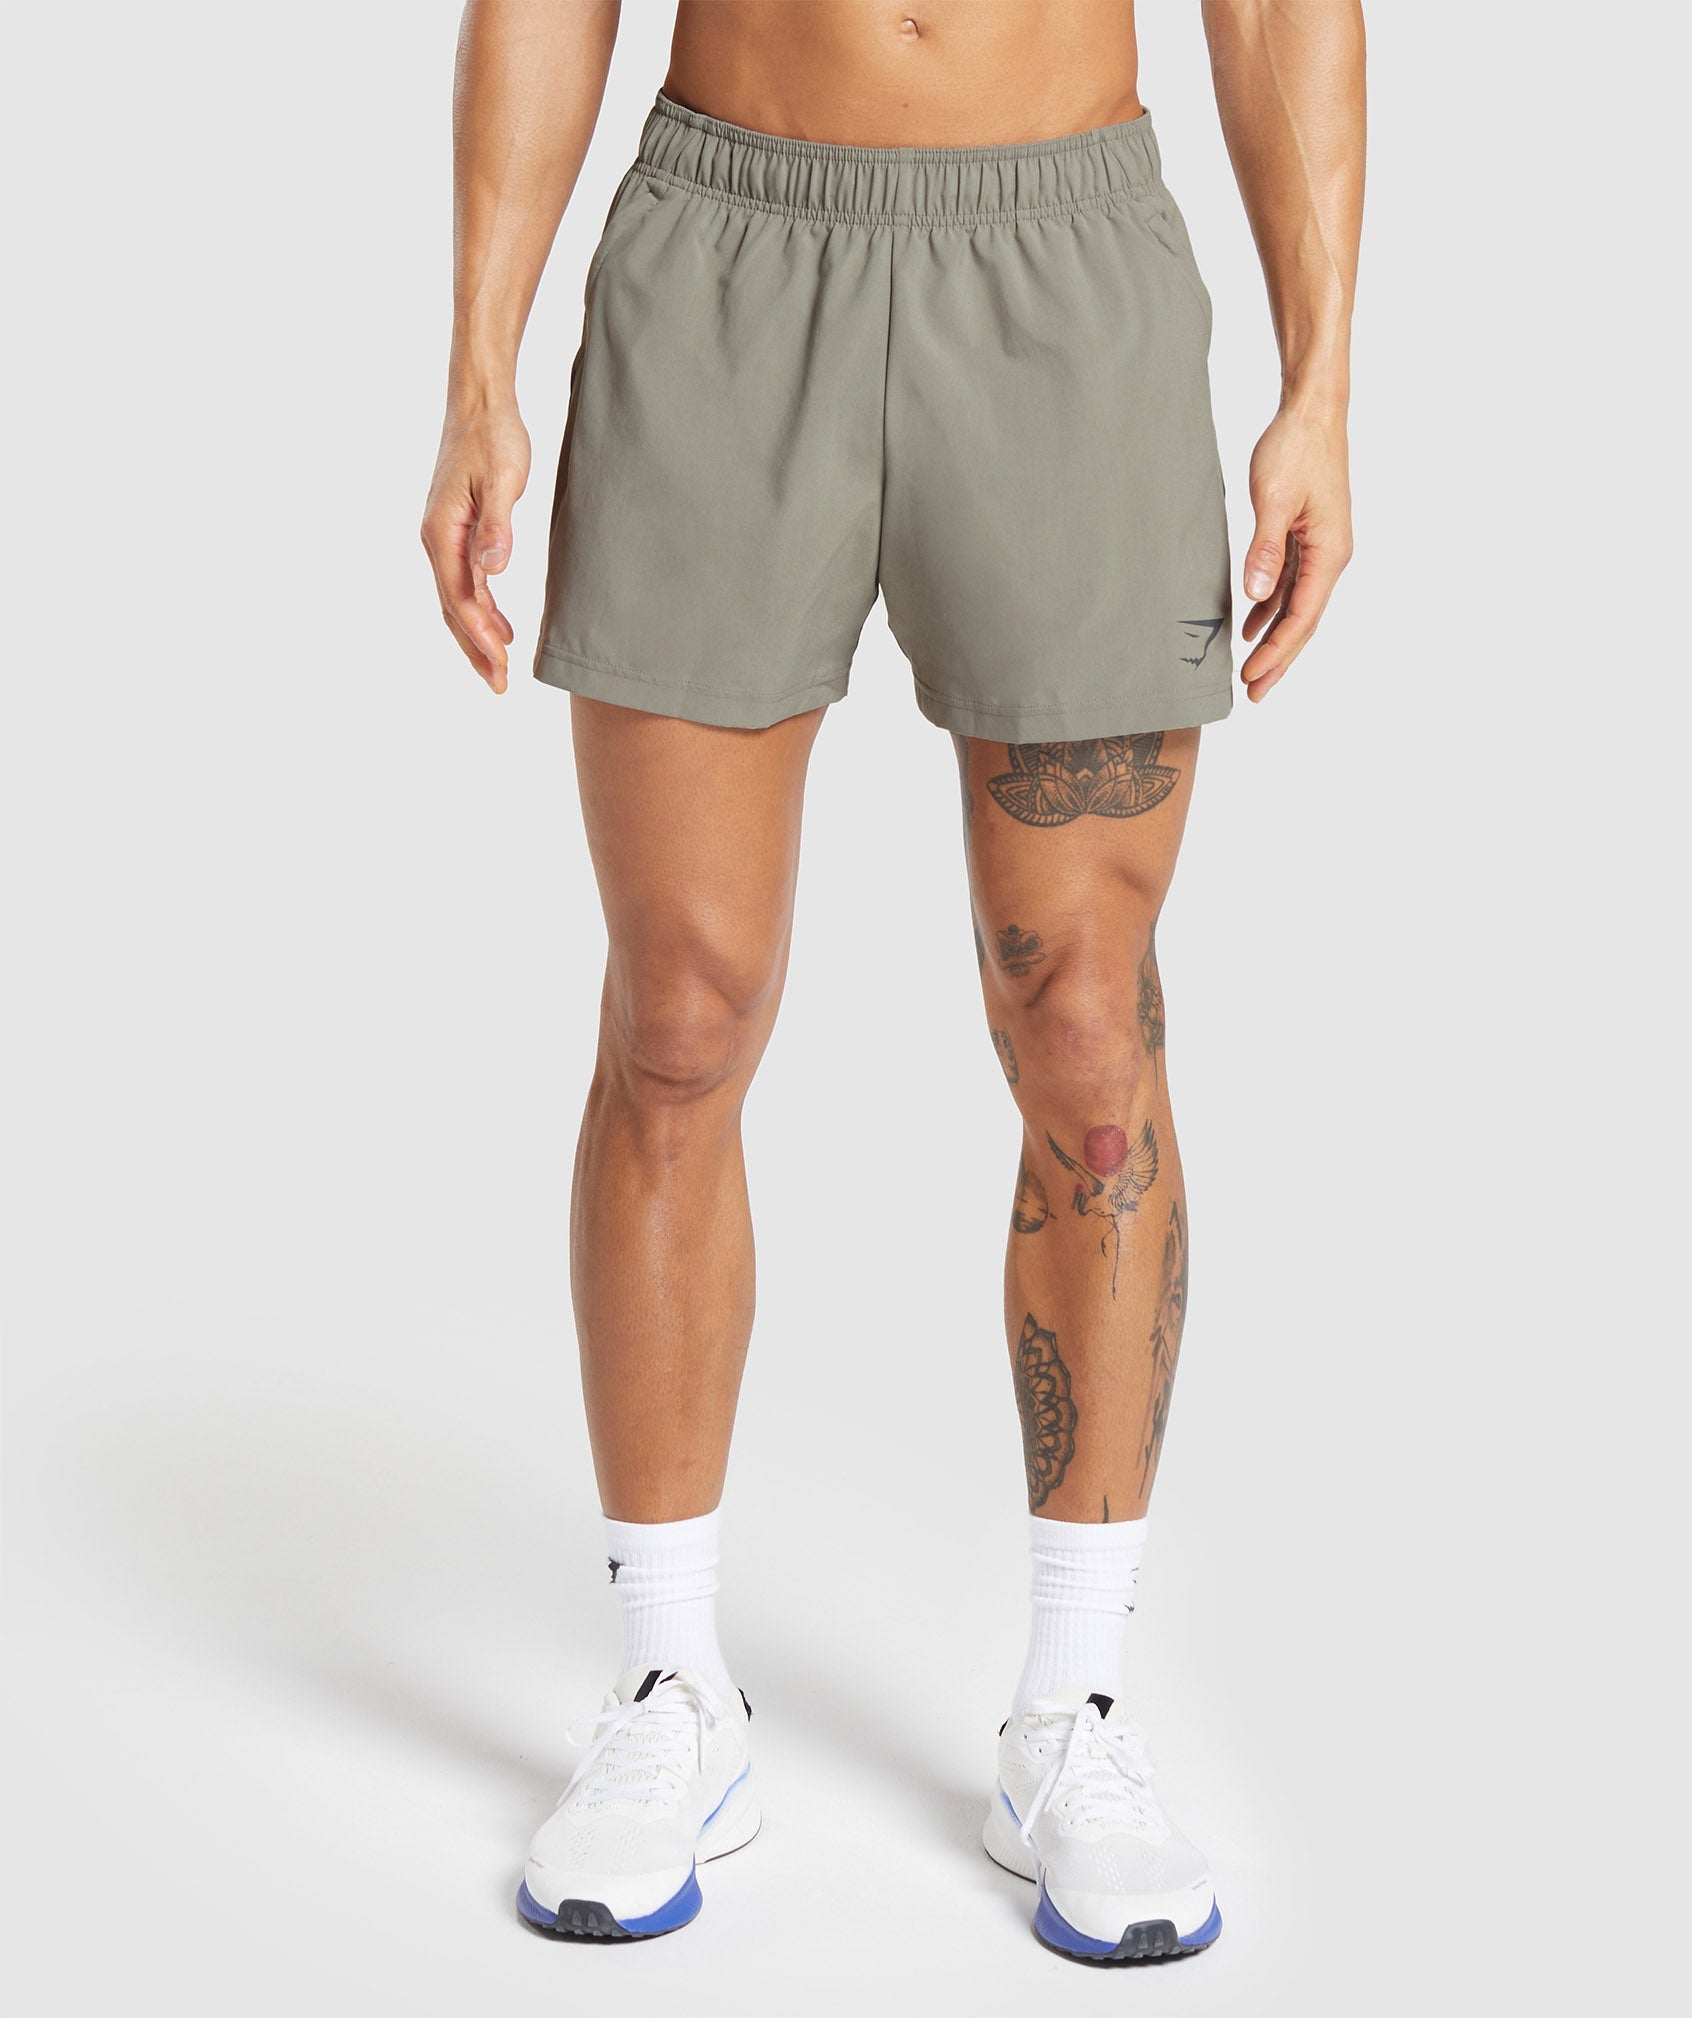 Sport 5" Shorts in Linen Brown/Dark Grey ist nicht auf Lager